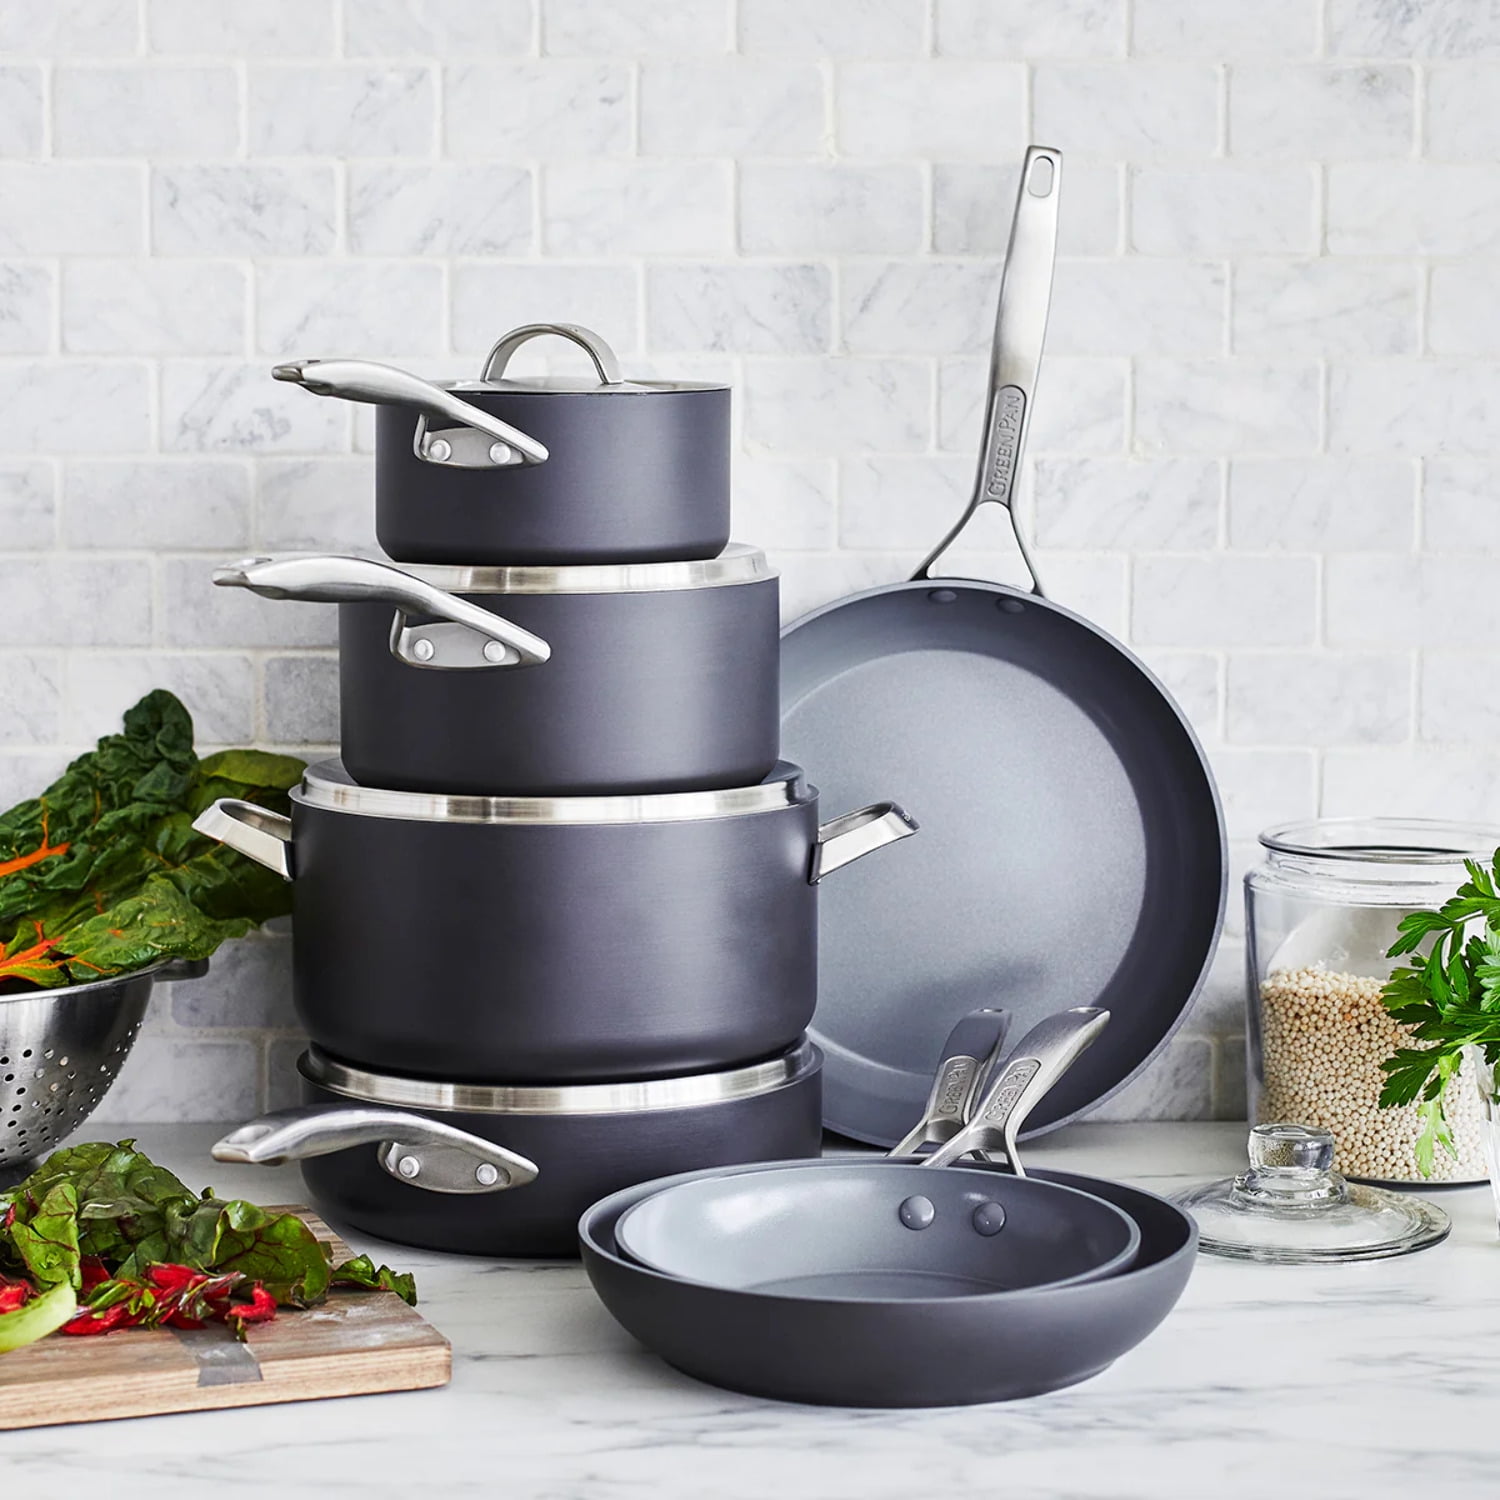 GreenPan Paris Pro Ceramic Nonstick Pots & Pans Cookware set, 11pc, Grey 